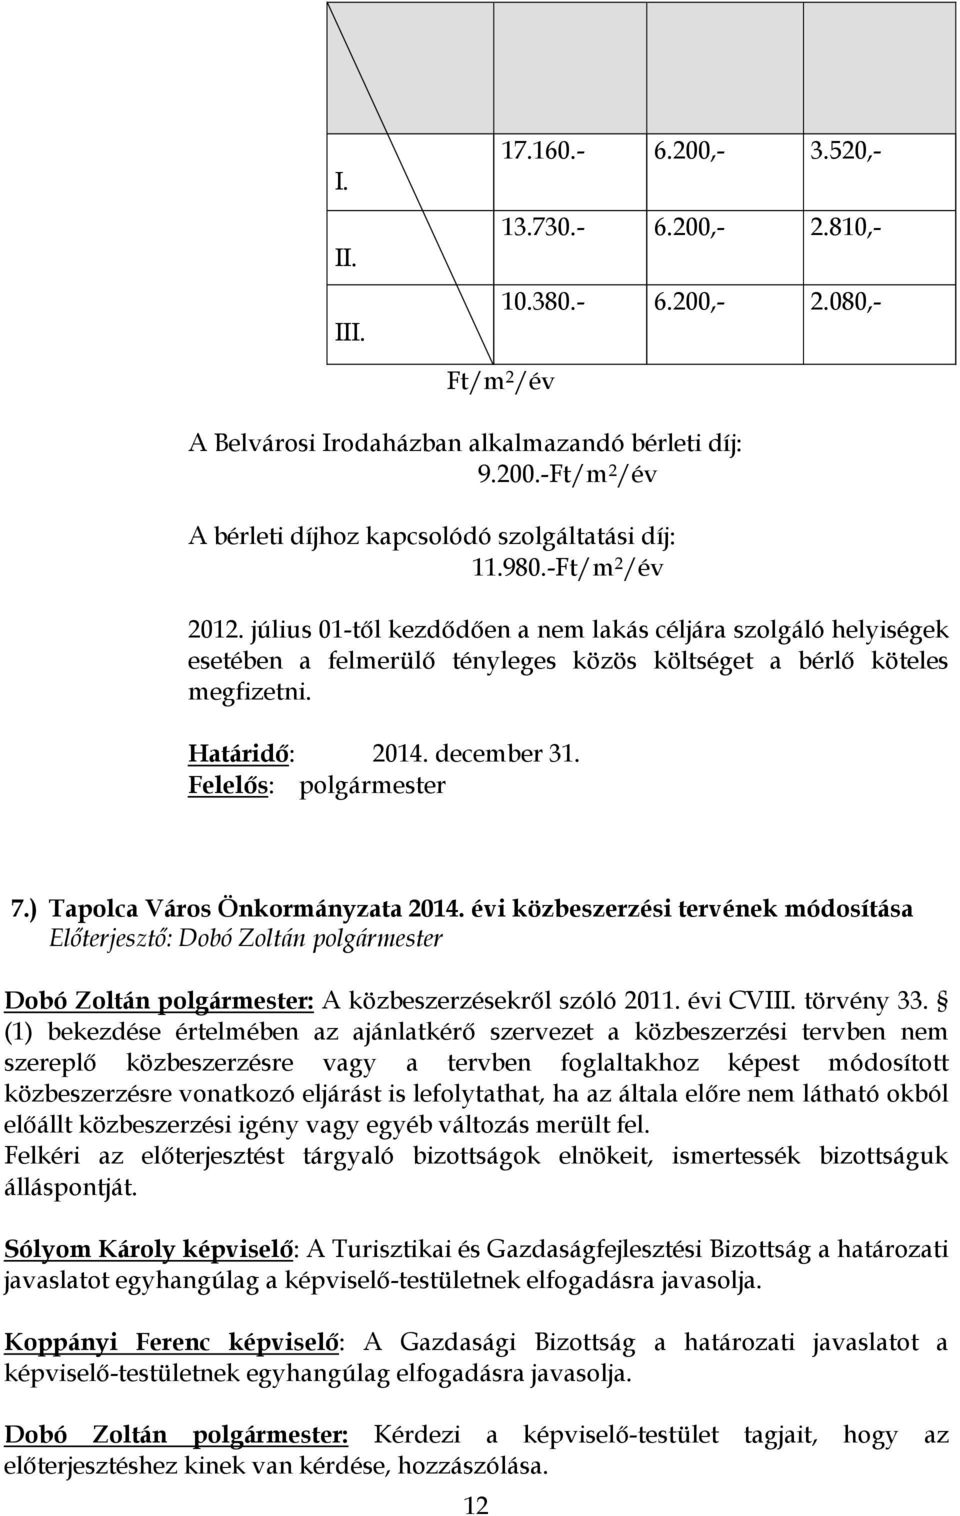 Felelős: polgármester 7.) Tapolca Város Önkormányzata 2014. évi közbeszerzési tervének módosítása Dobó Zoltán polgármester: A közbeszerzésekről szóló 2011. évi CVIII. törvény 33.